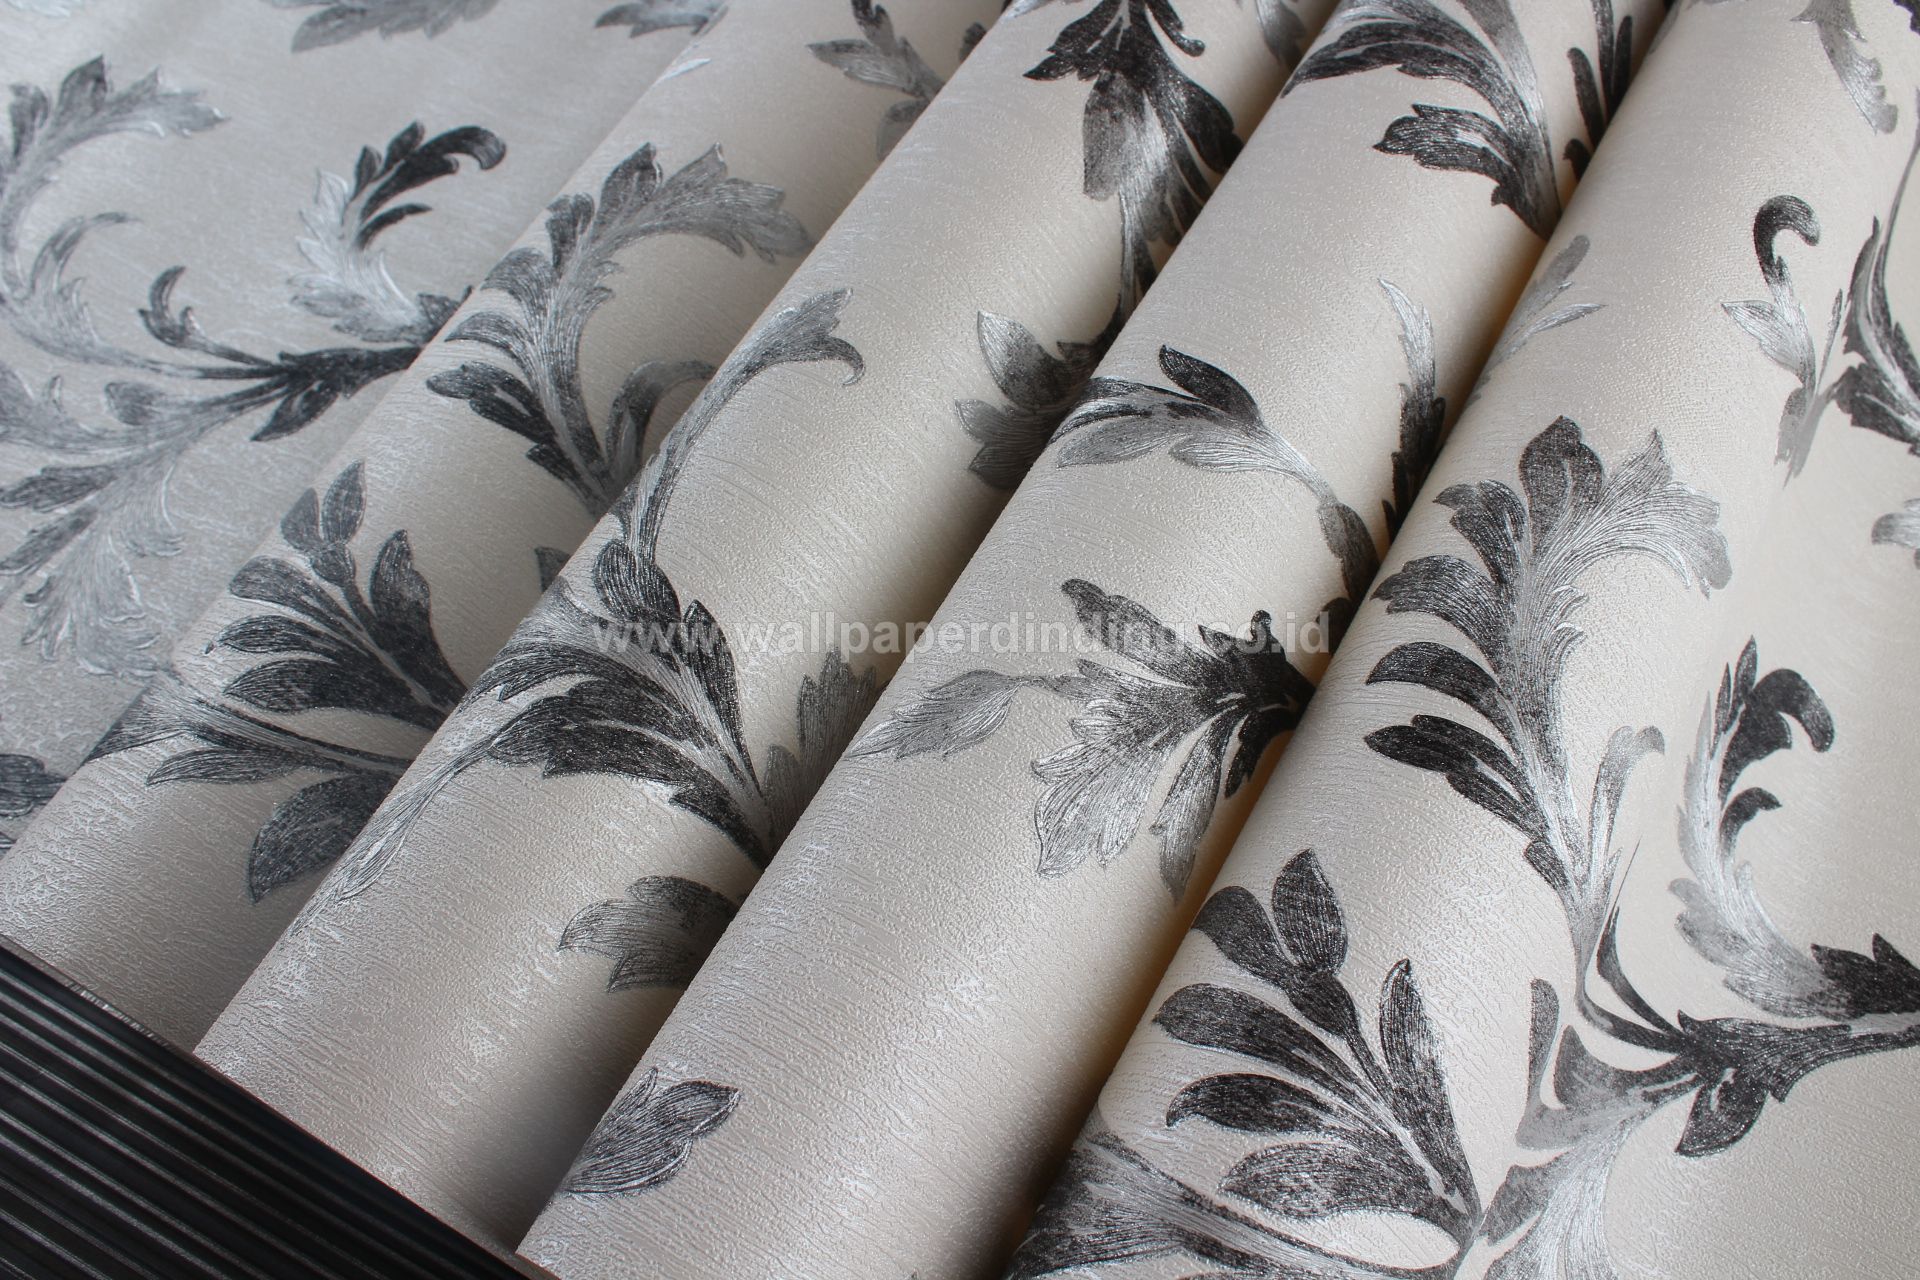 Wallpaper Dinding Daun Silver Hitam Lrnz 400 50 - Bed Skirt , HD Wallpaper & Backgrounds